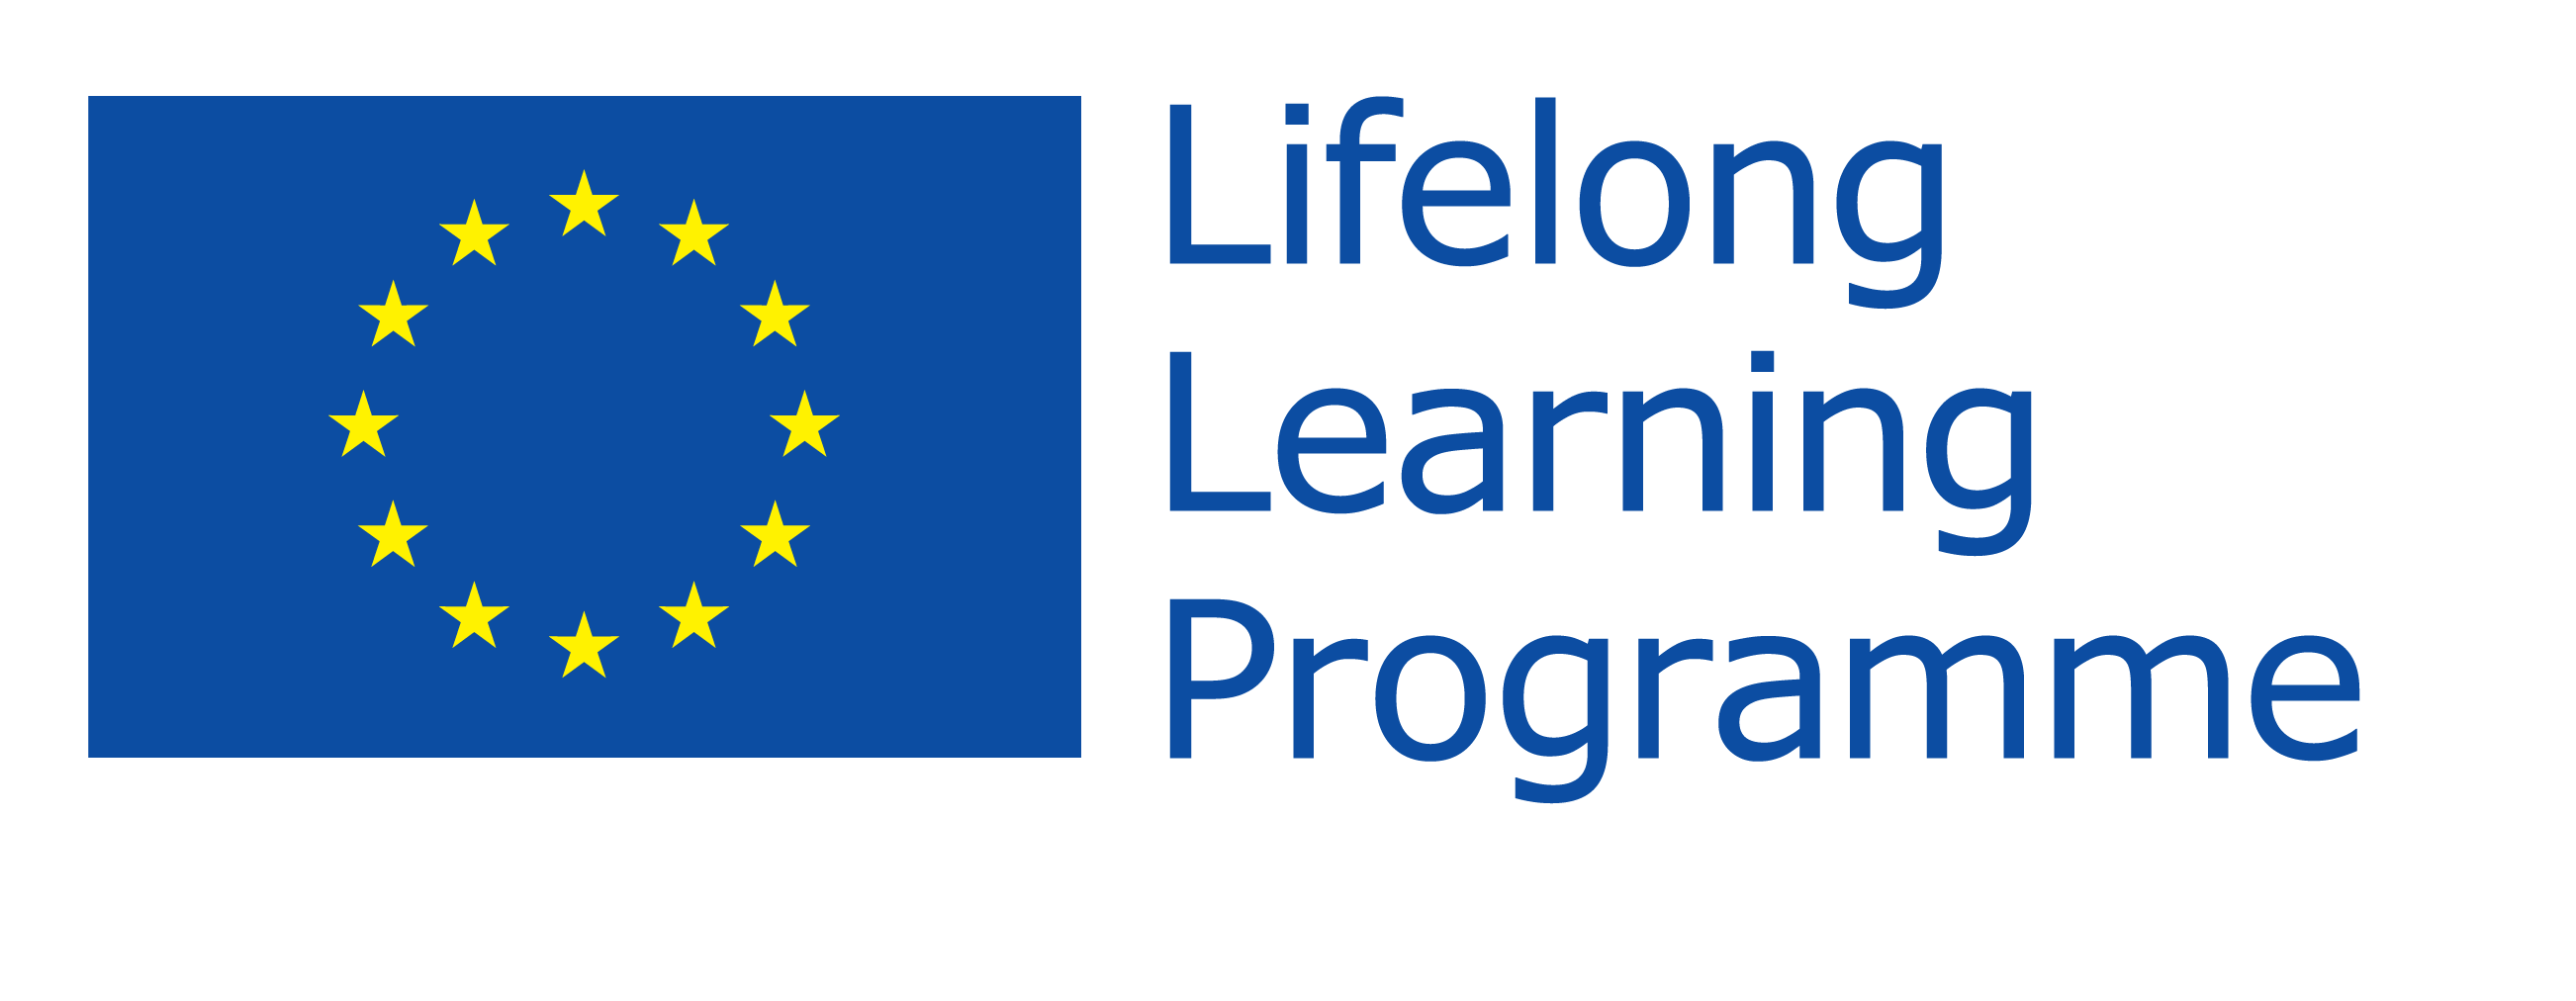 EU Lifelong Learning Program